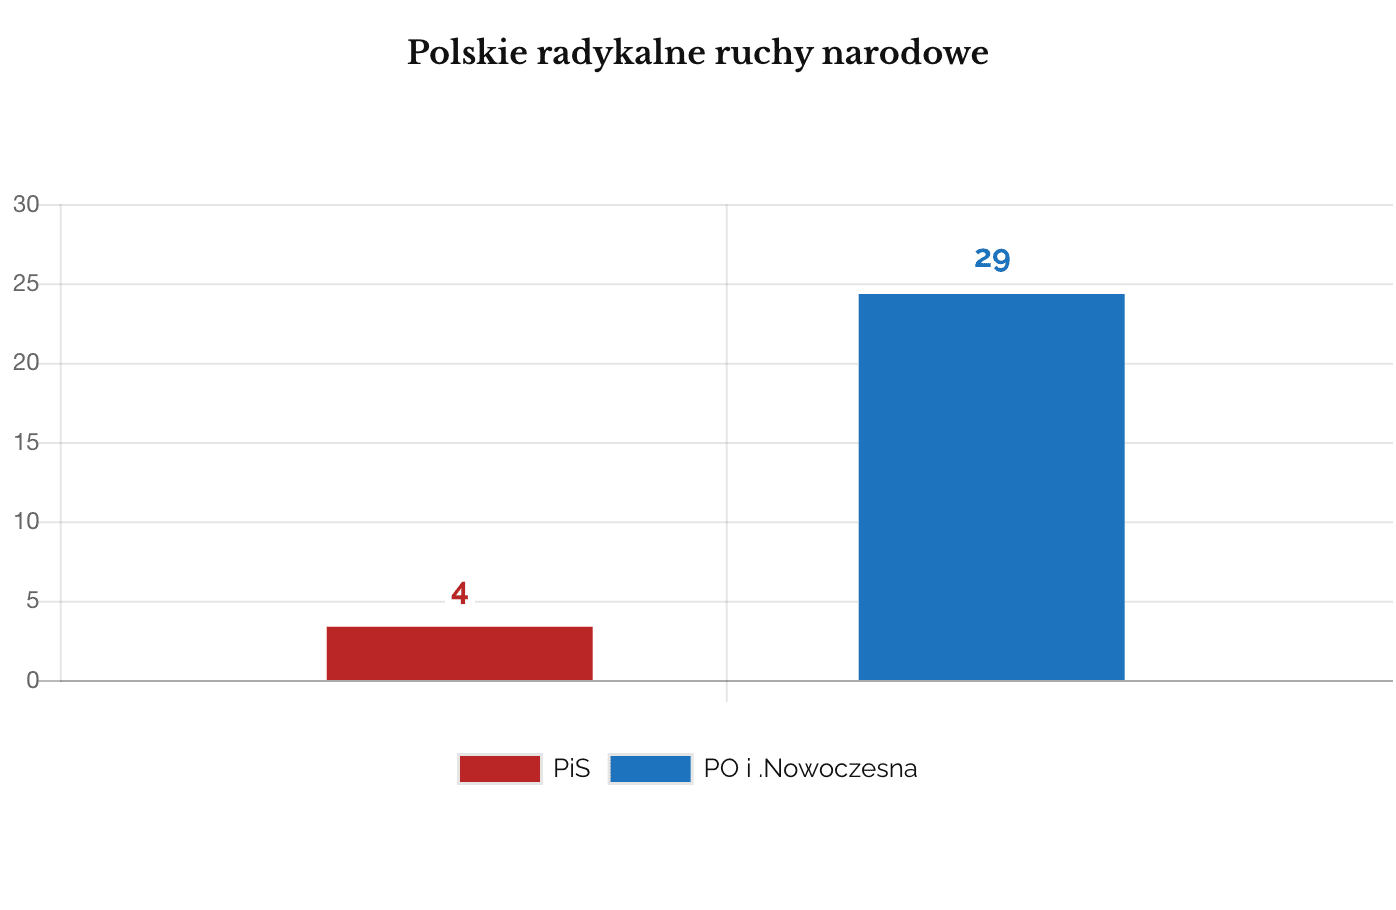 Co zagraża bezpieczeństwu Polski? Narodowcy